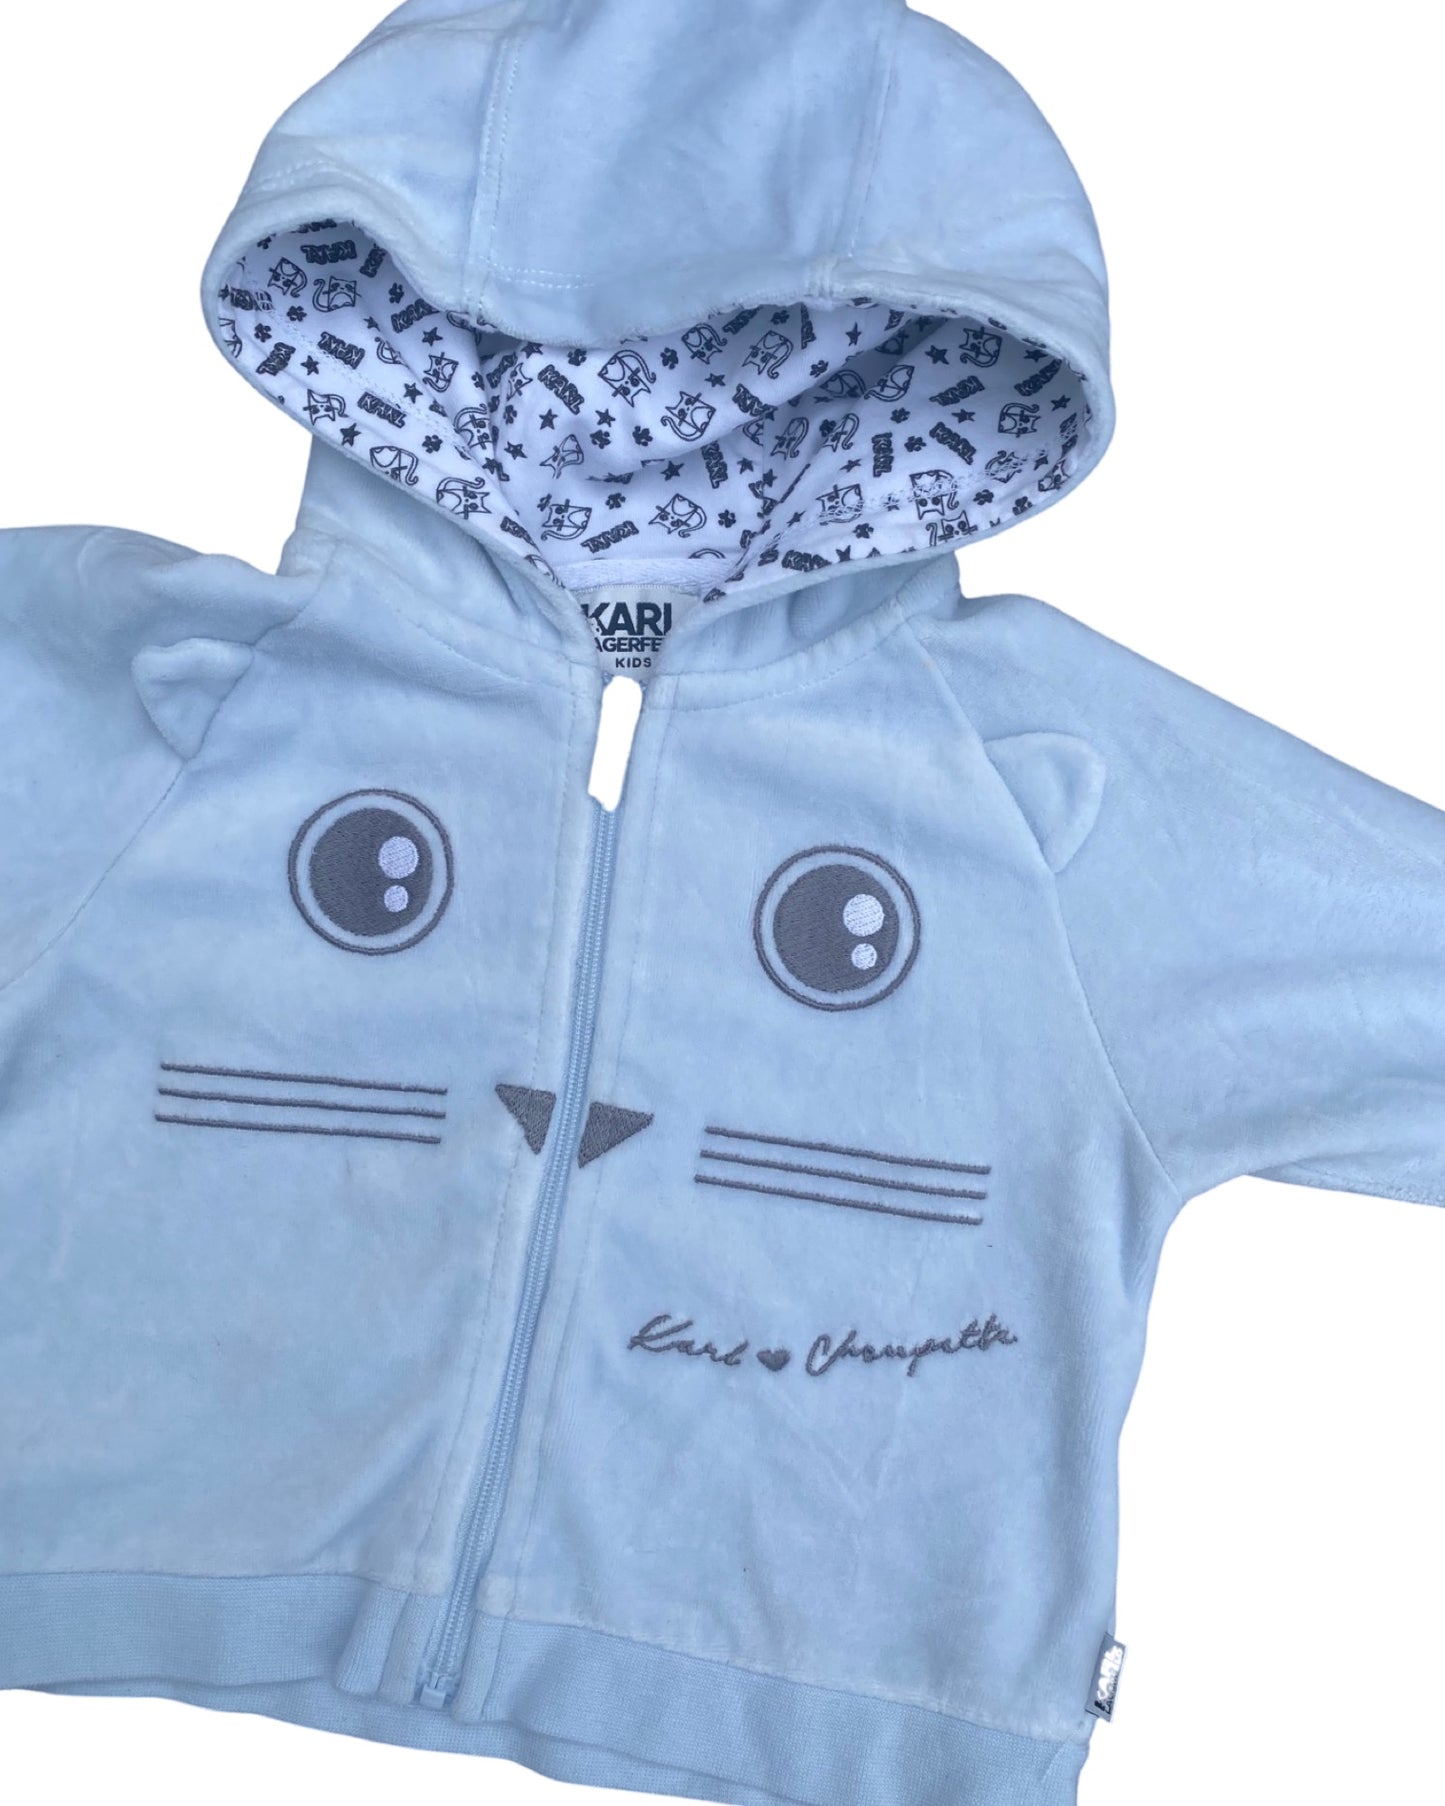 Karl Lagerfeld baby zip up baby blue velour hoodie (6-9mths)